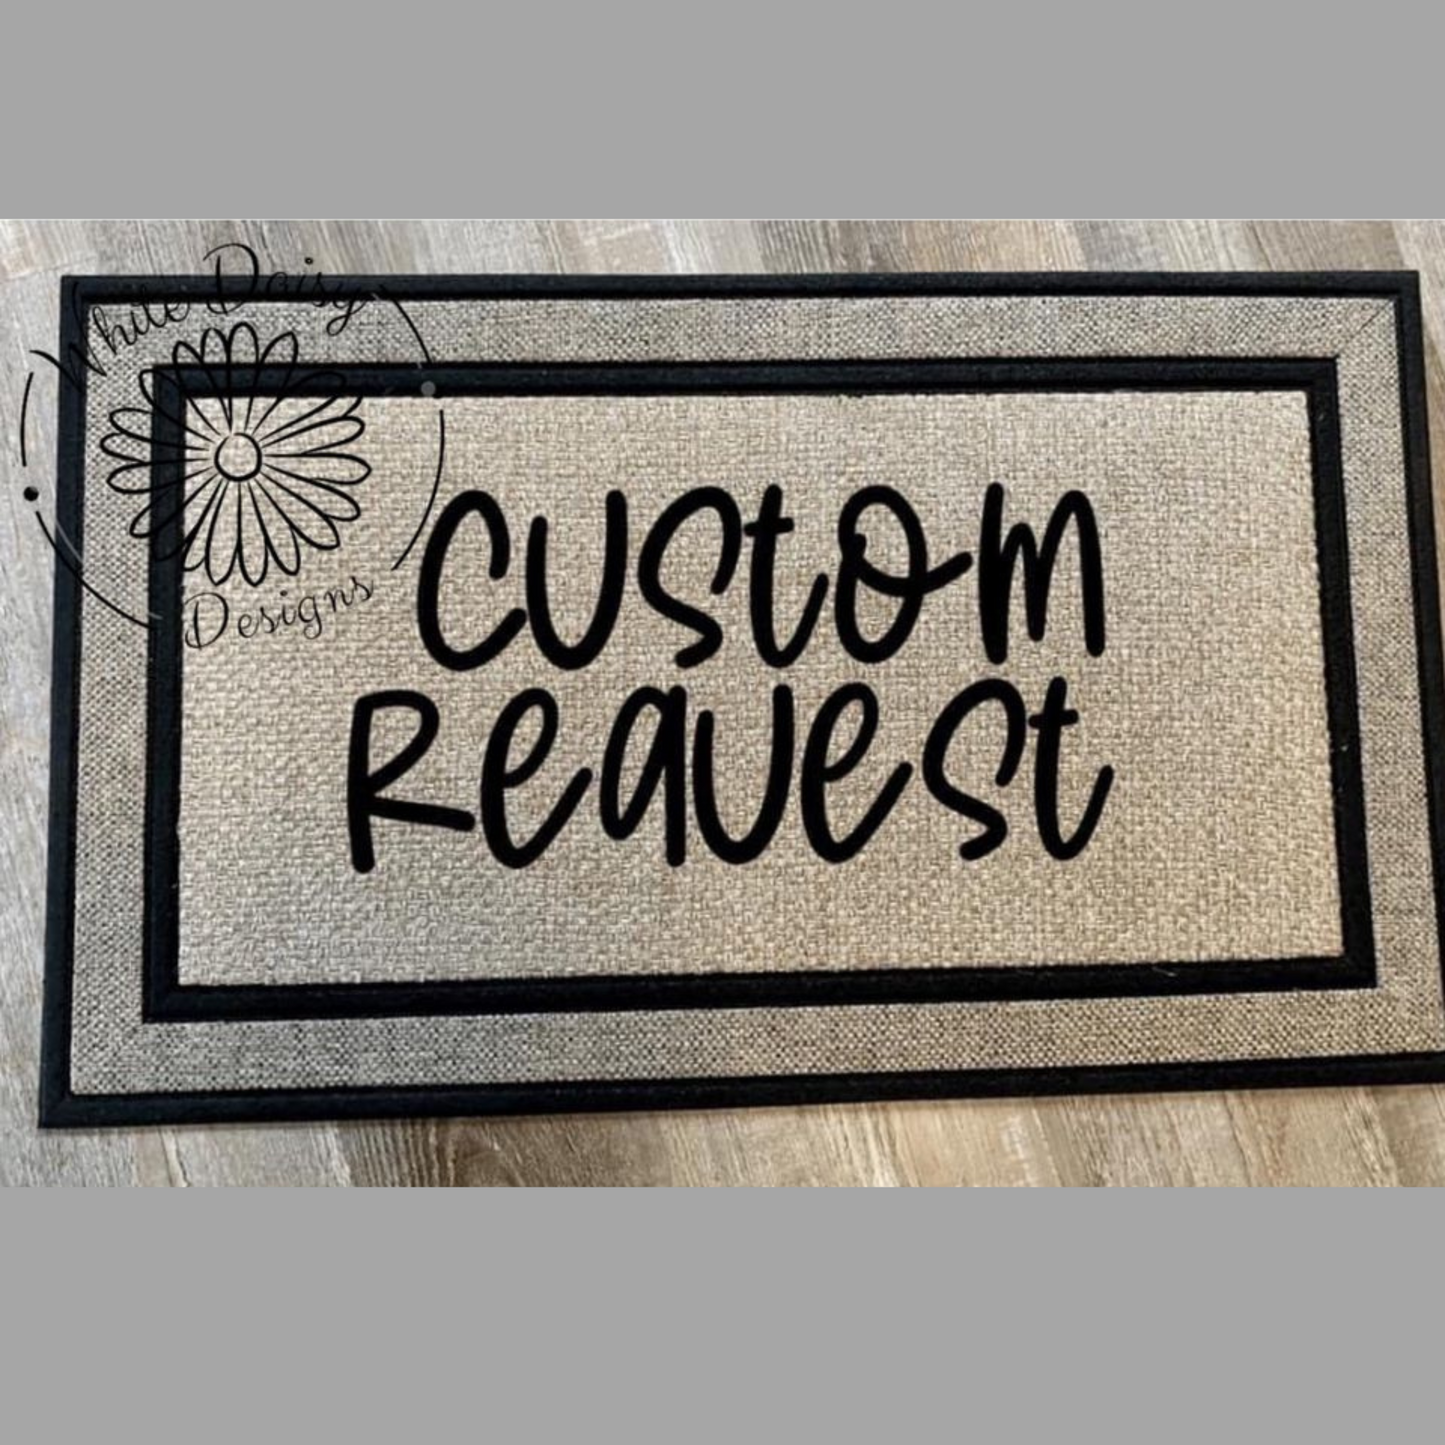 Custom Doormat